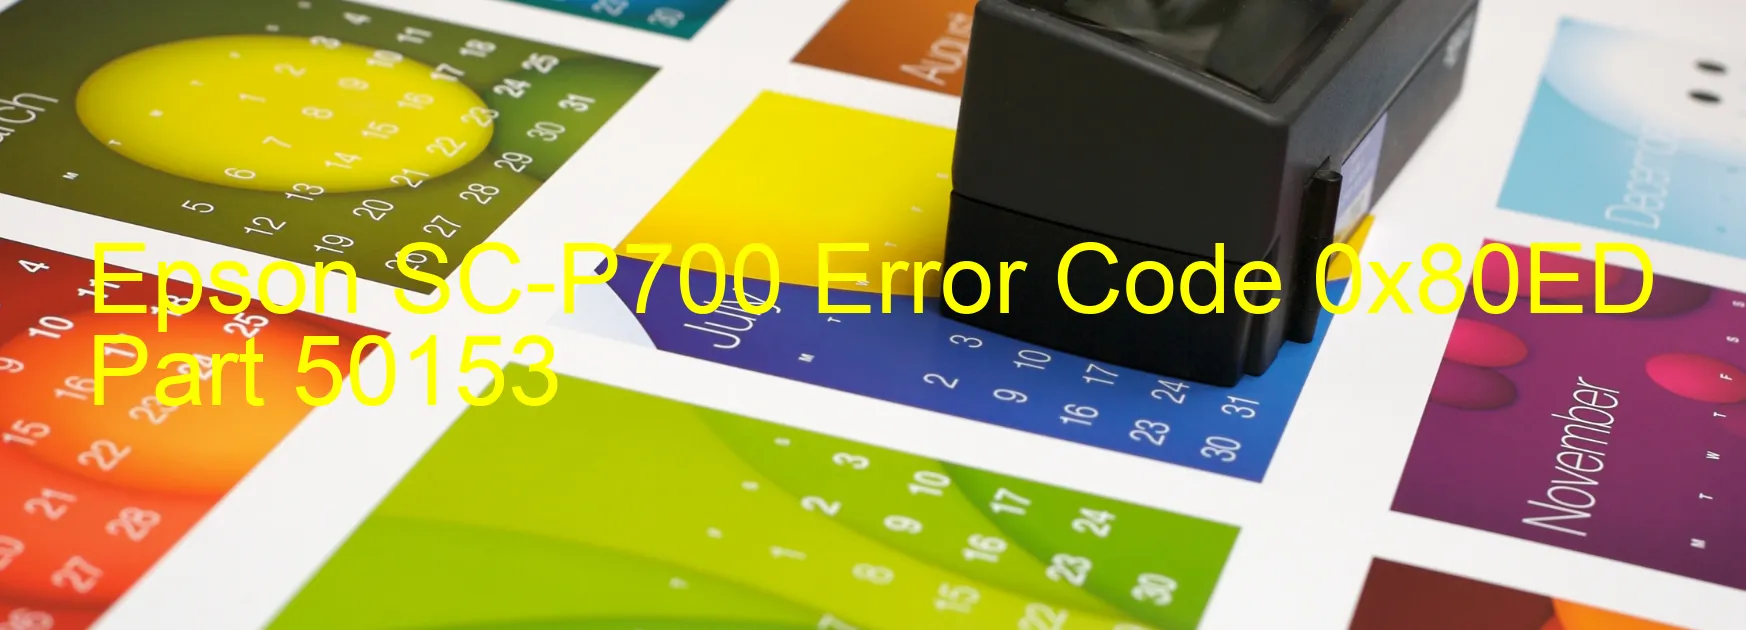 Epson SC-P700 Error Code 0x80ED Part 50153